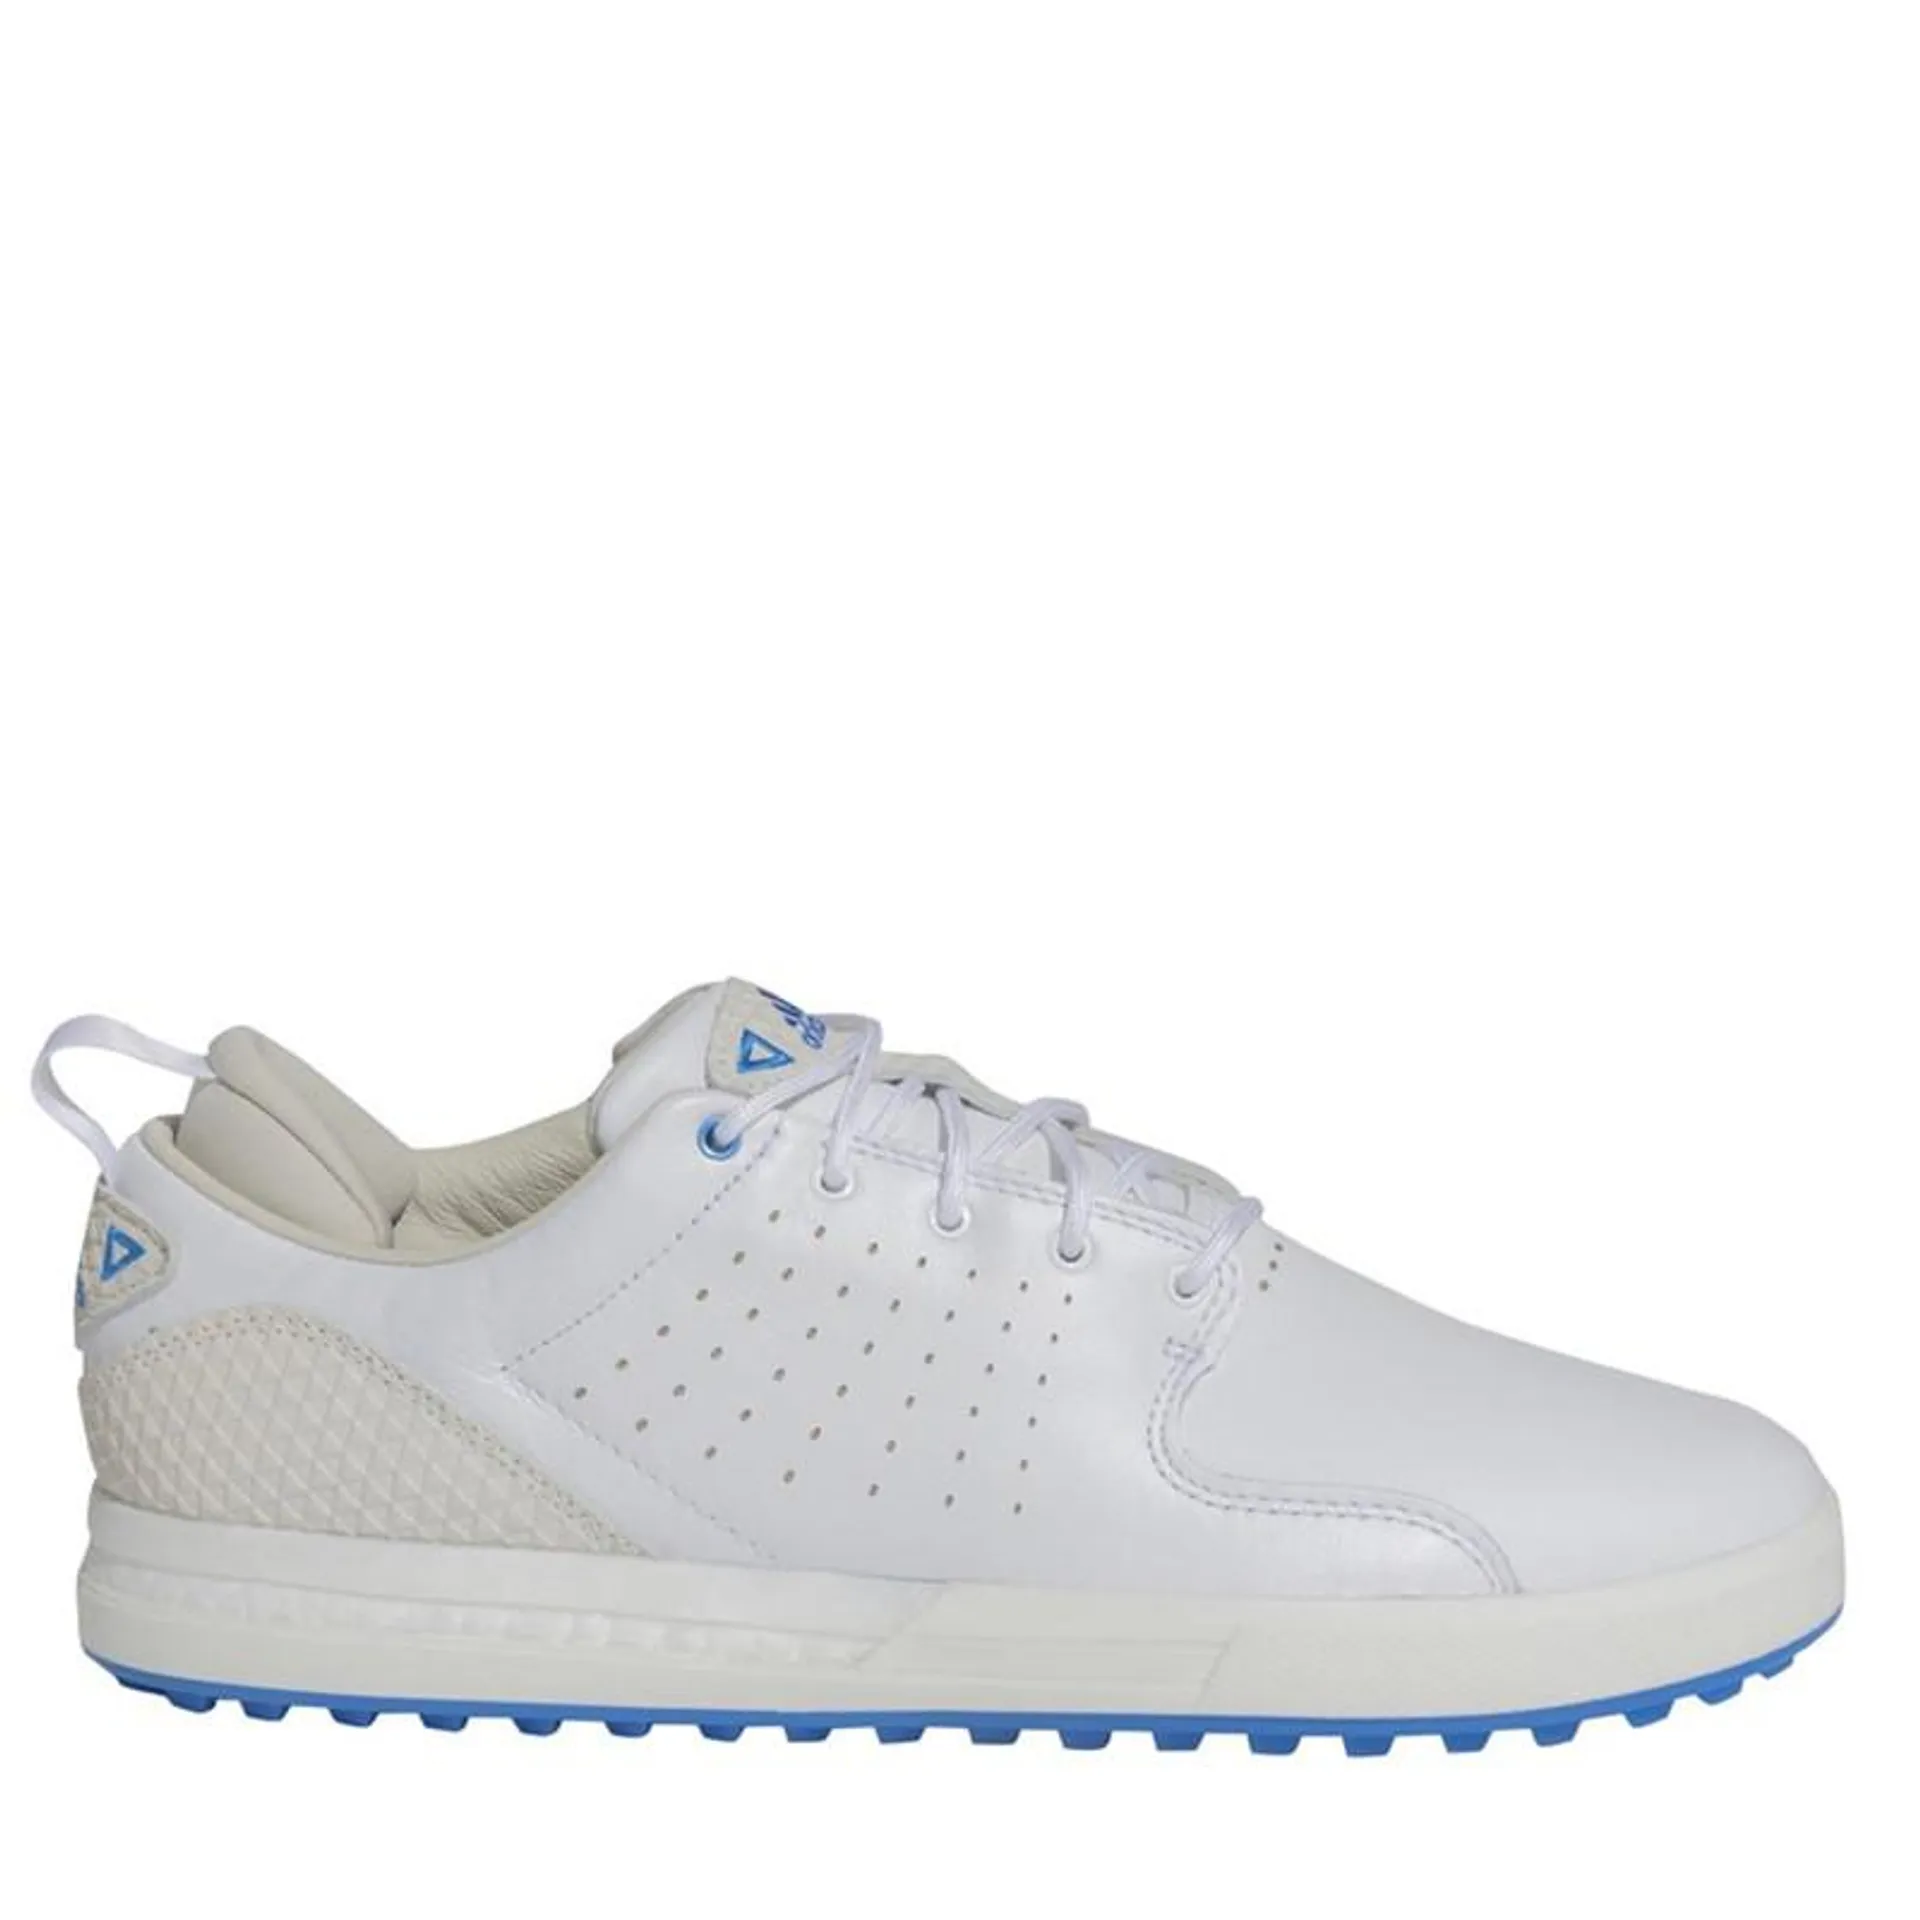 adidas Mens Flopshot Waterproof Spikeless Golf Shoes Ftwwht/Goldmt/Blurus